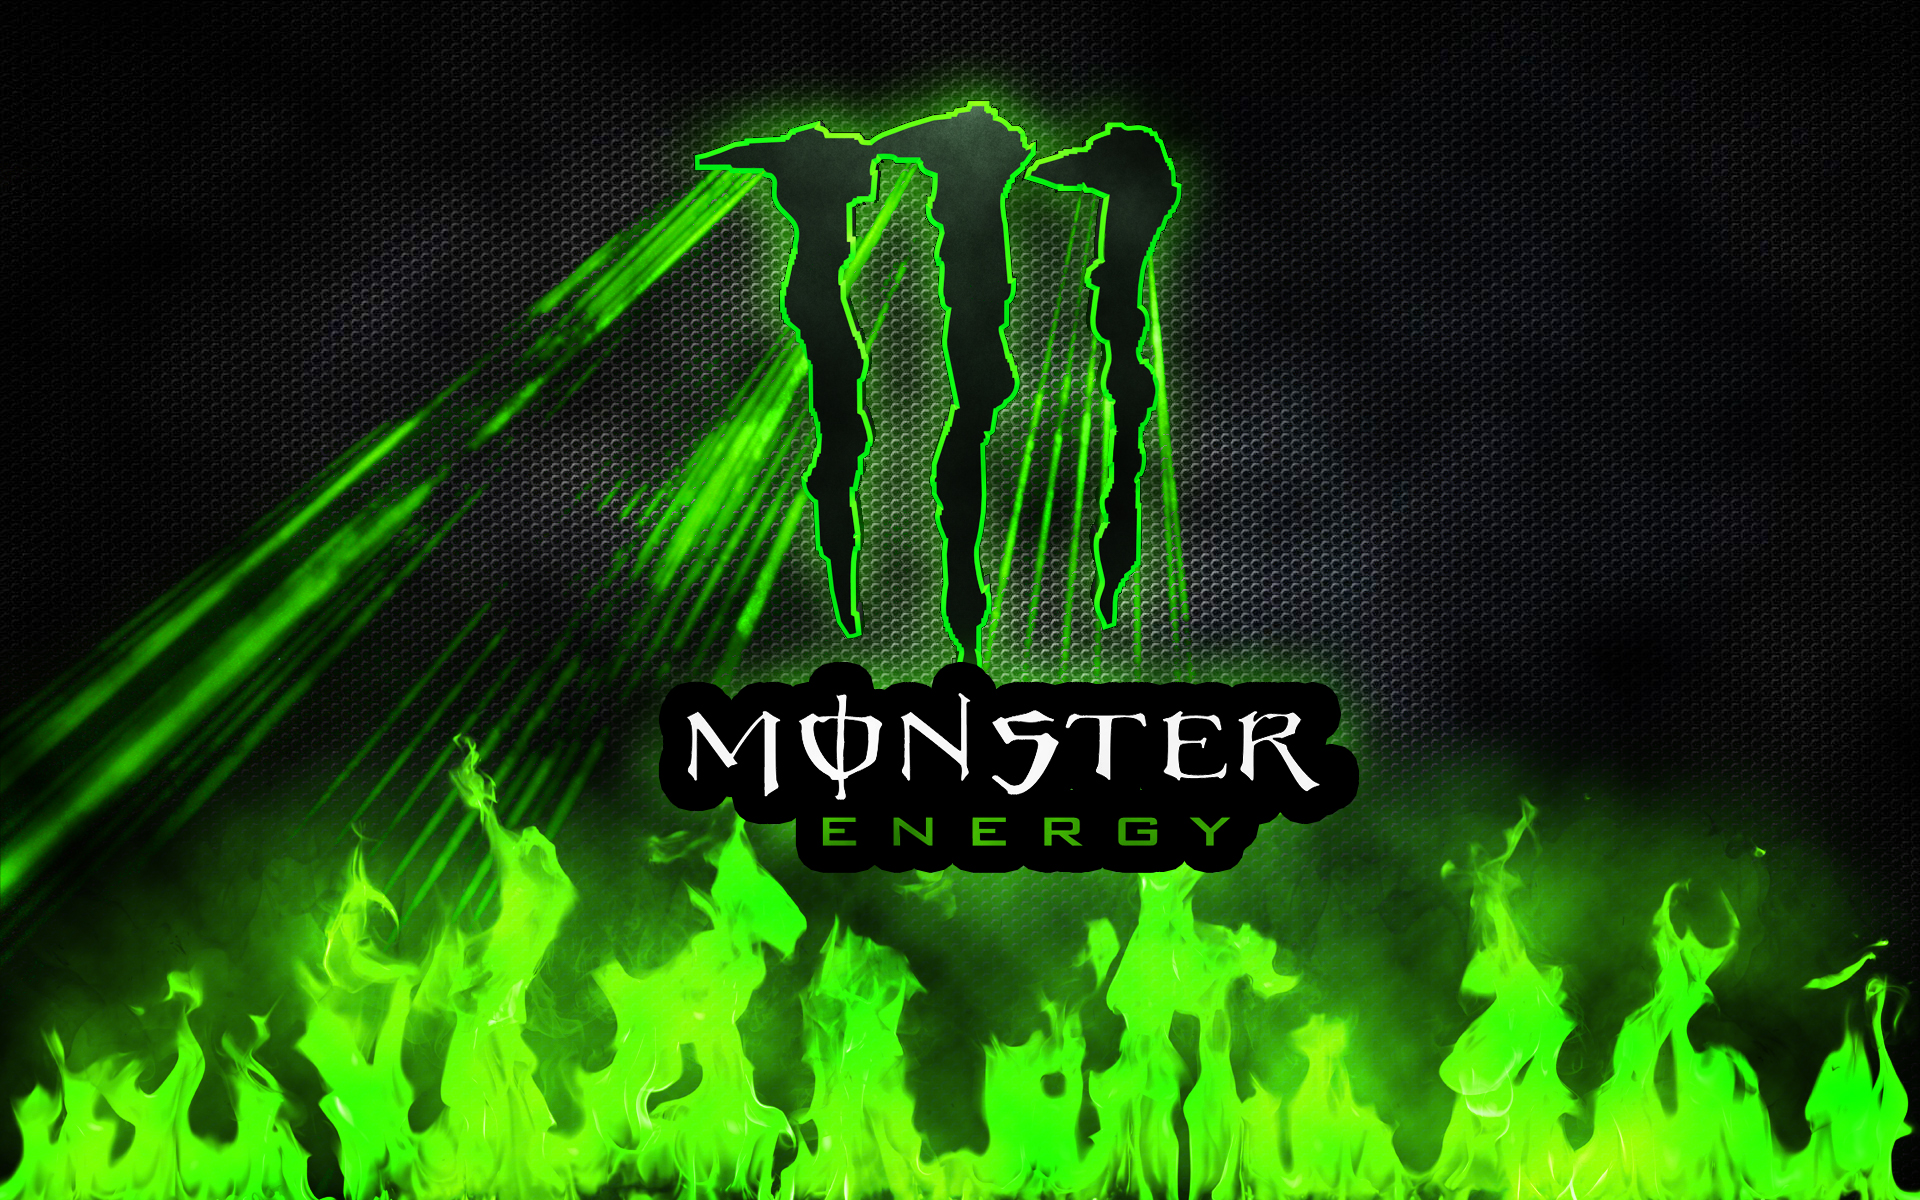 monster energy drink wallpaper,green,text,font,logo,grass